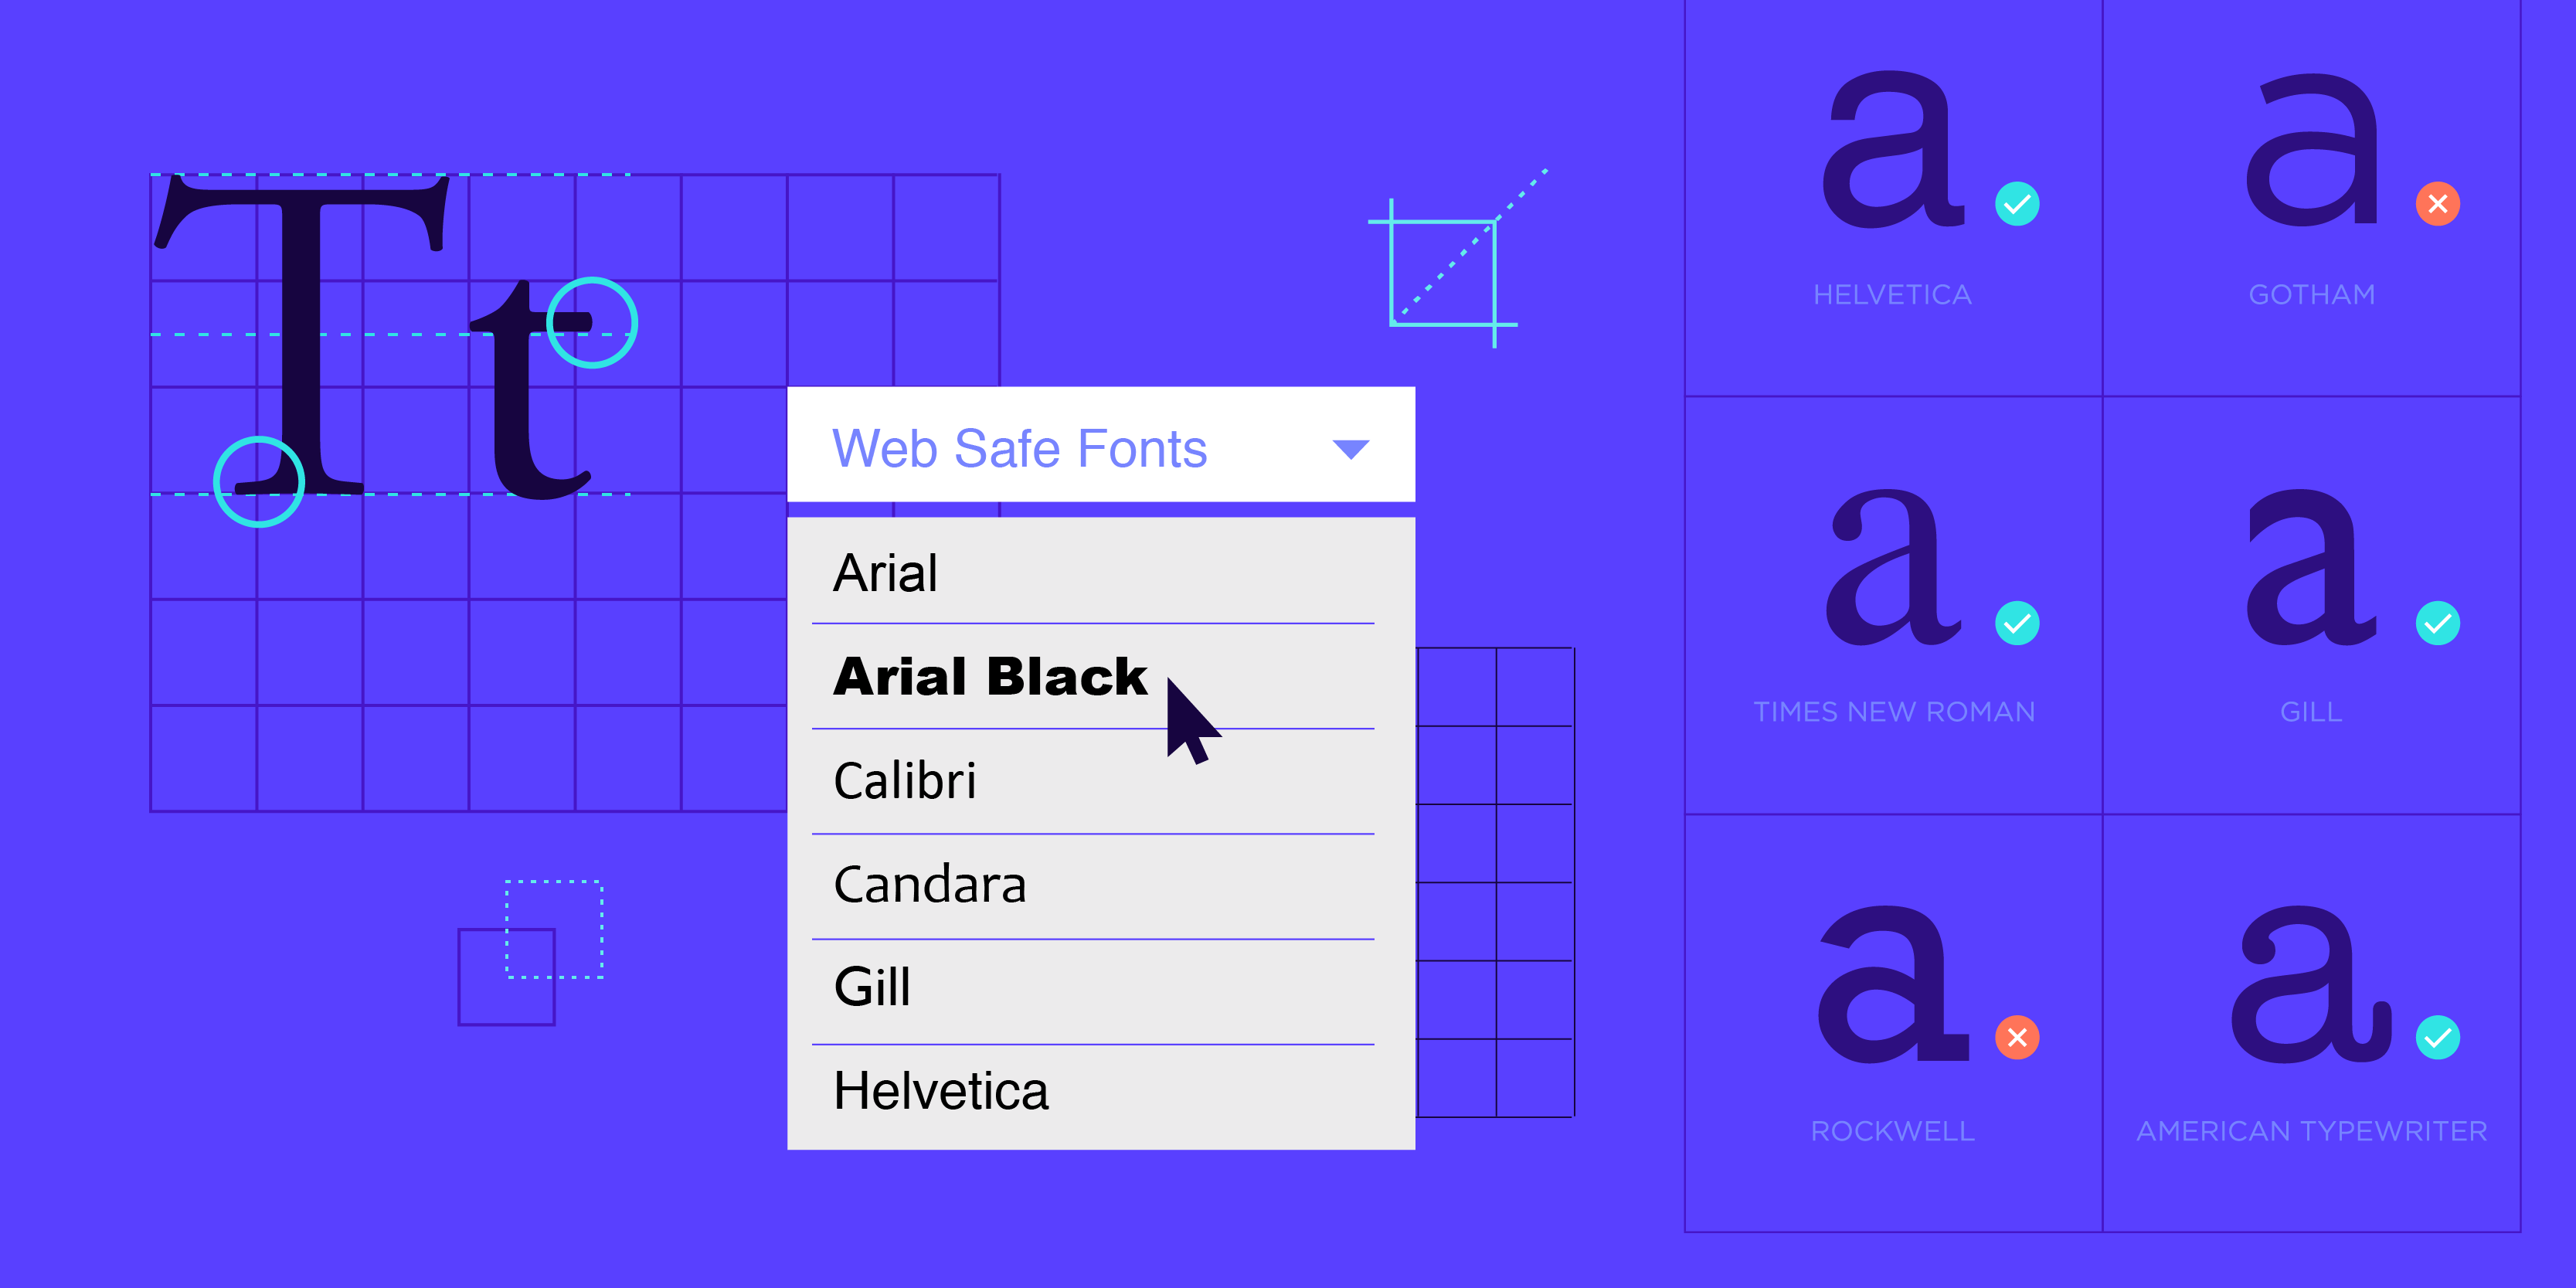 Web safe fonts